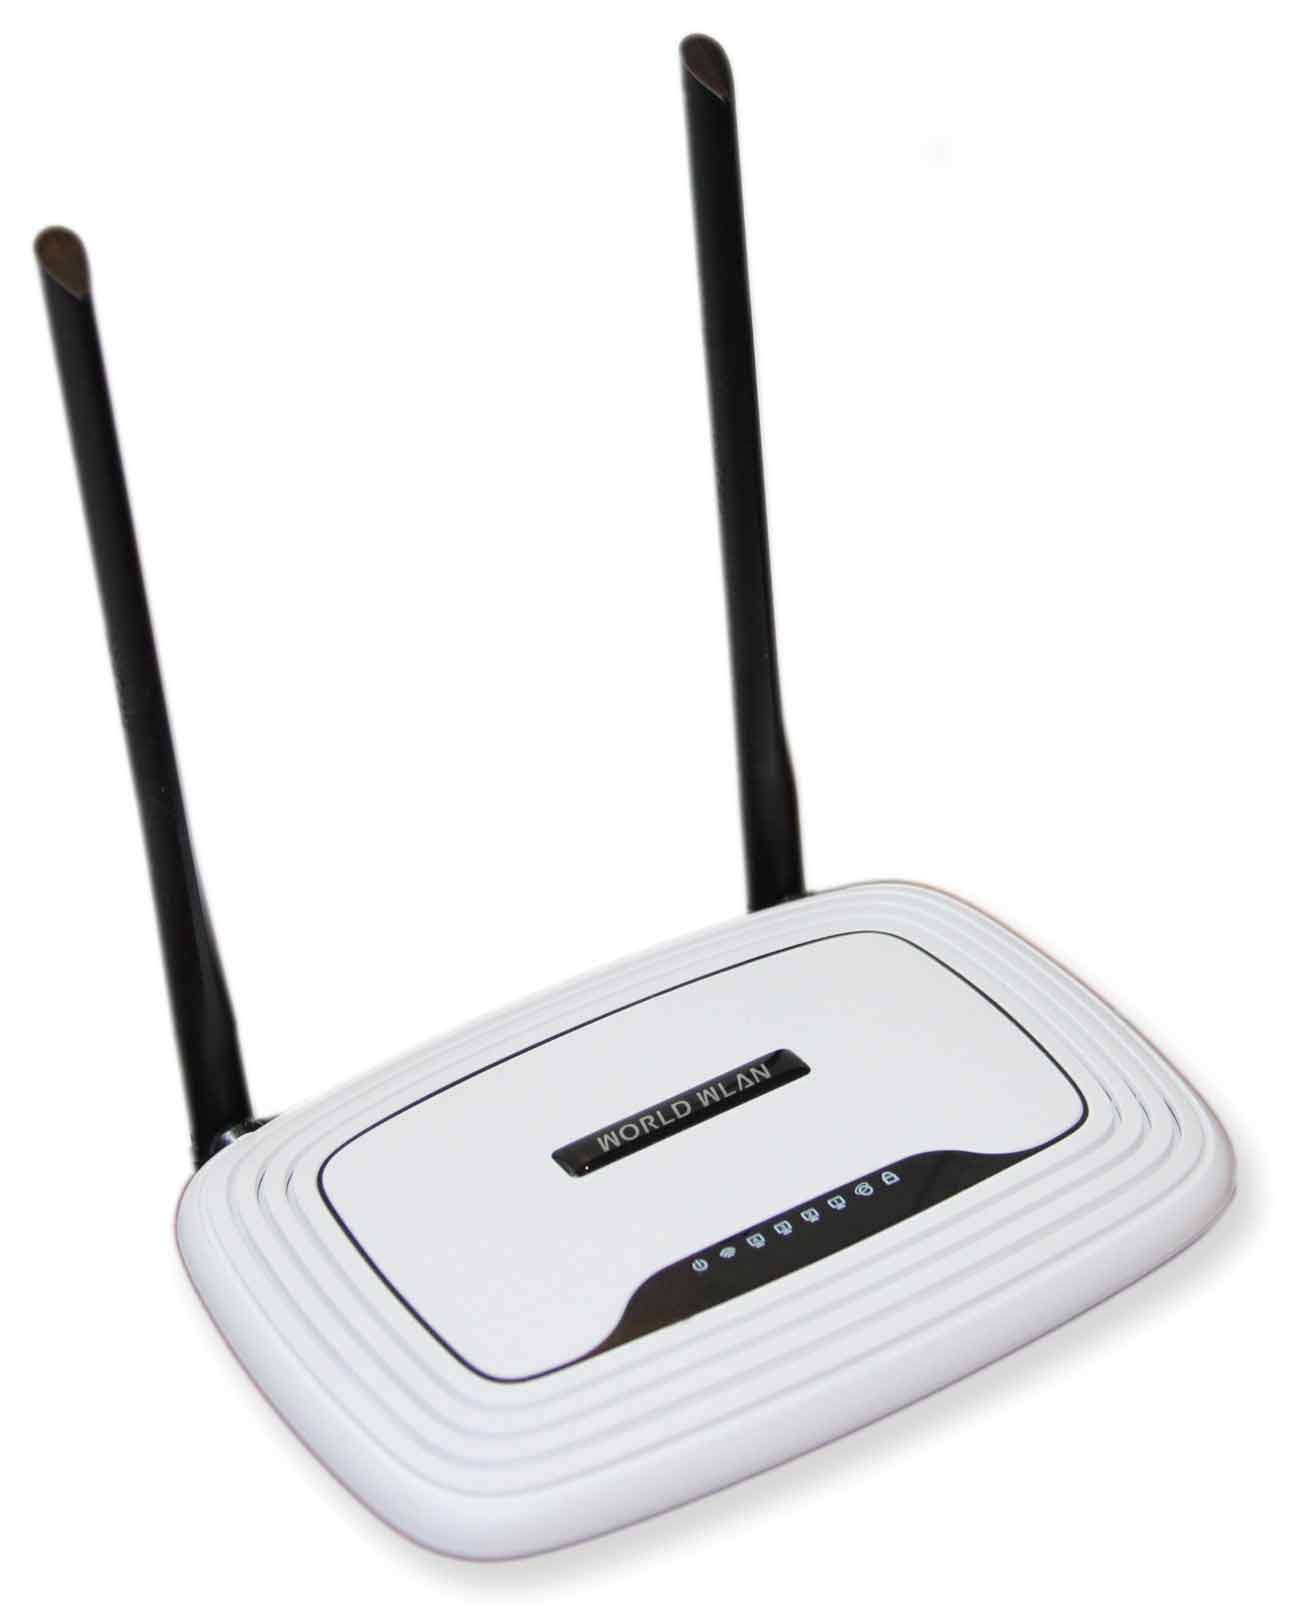 ProtectBox Router damit Gäste rechtssicher ins WLAN können. ohne Abmahnung oder Störerhaftung.